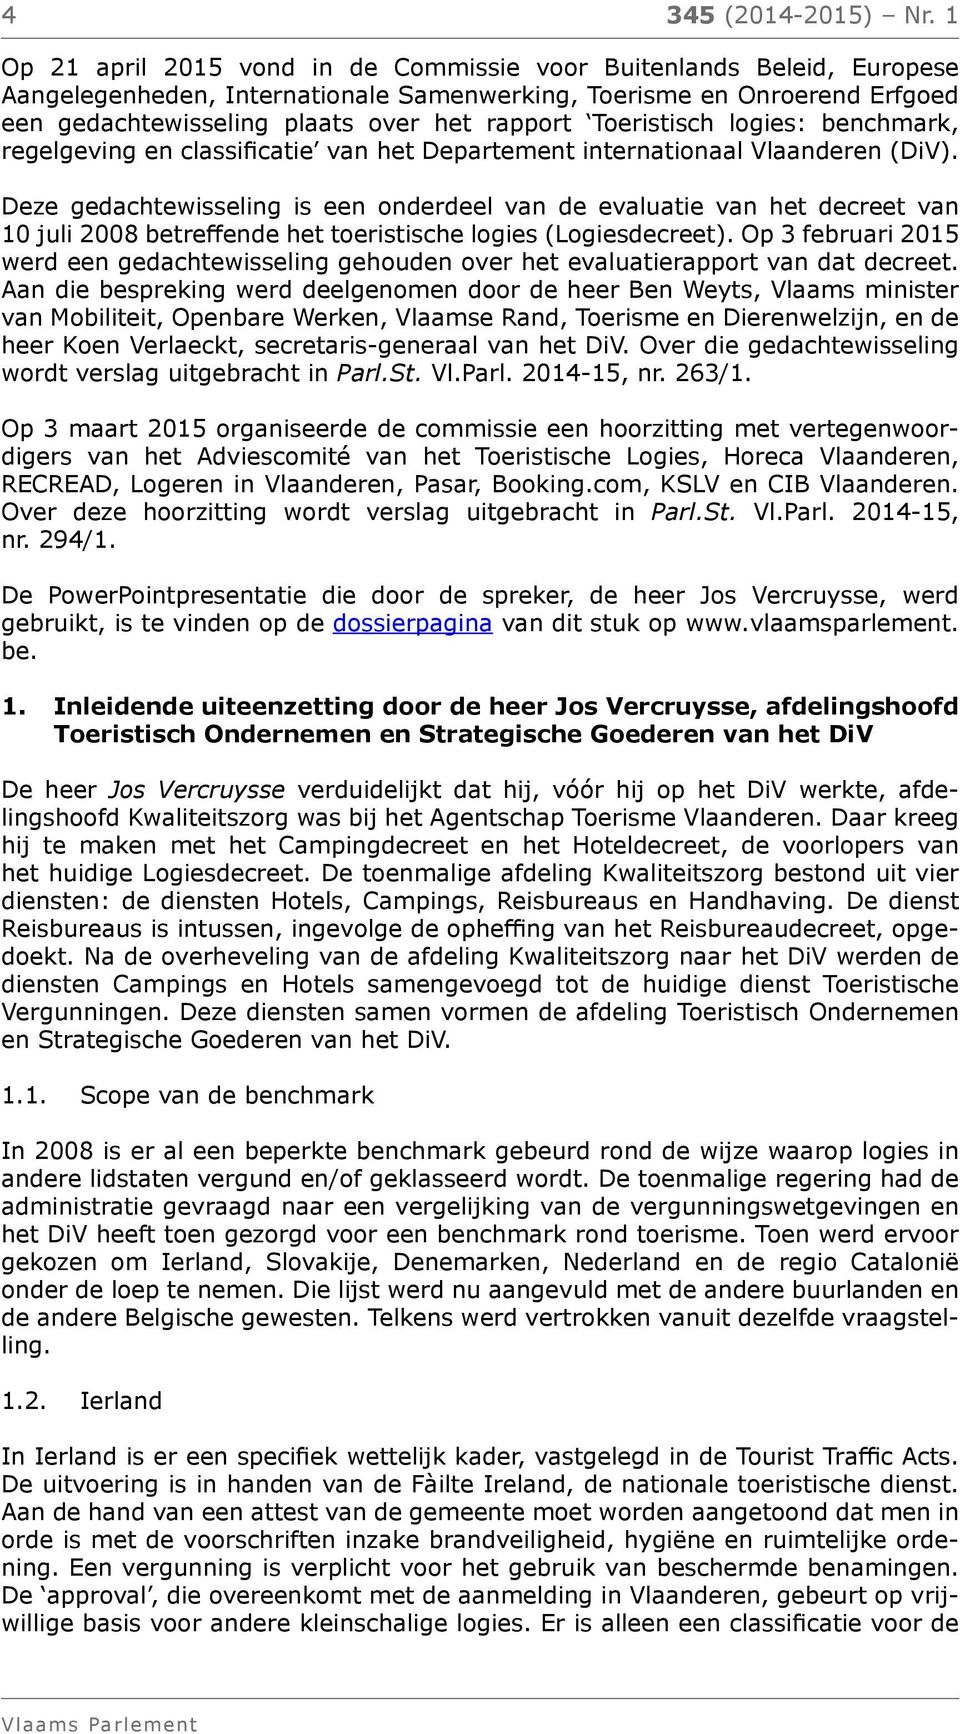 Toeristisch logies: benchmark, regelgeving en classificatie van het Departement internationaal Vlaanderen (DiV).